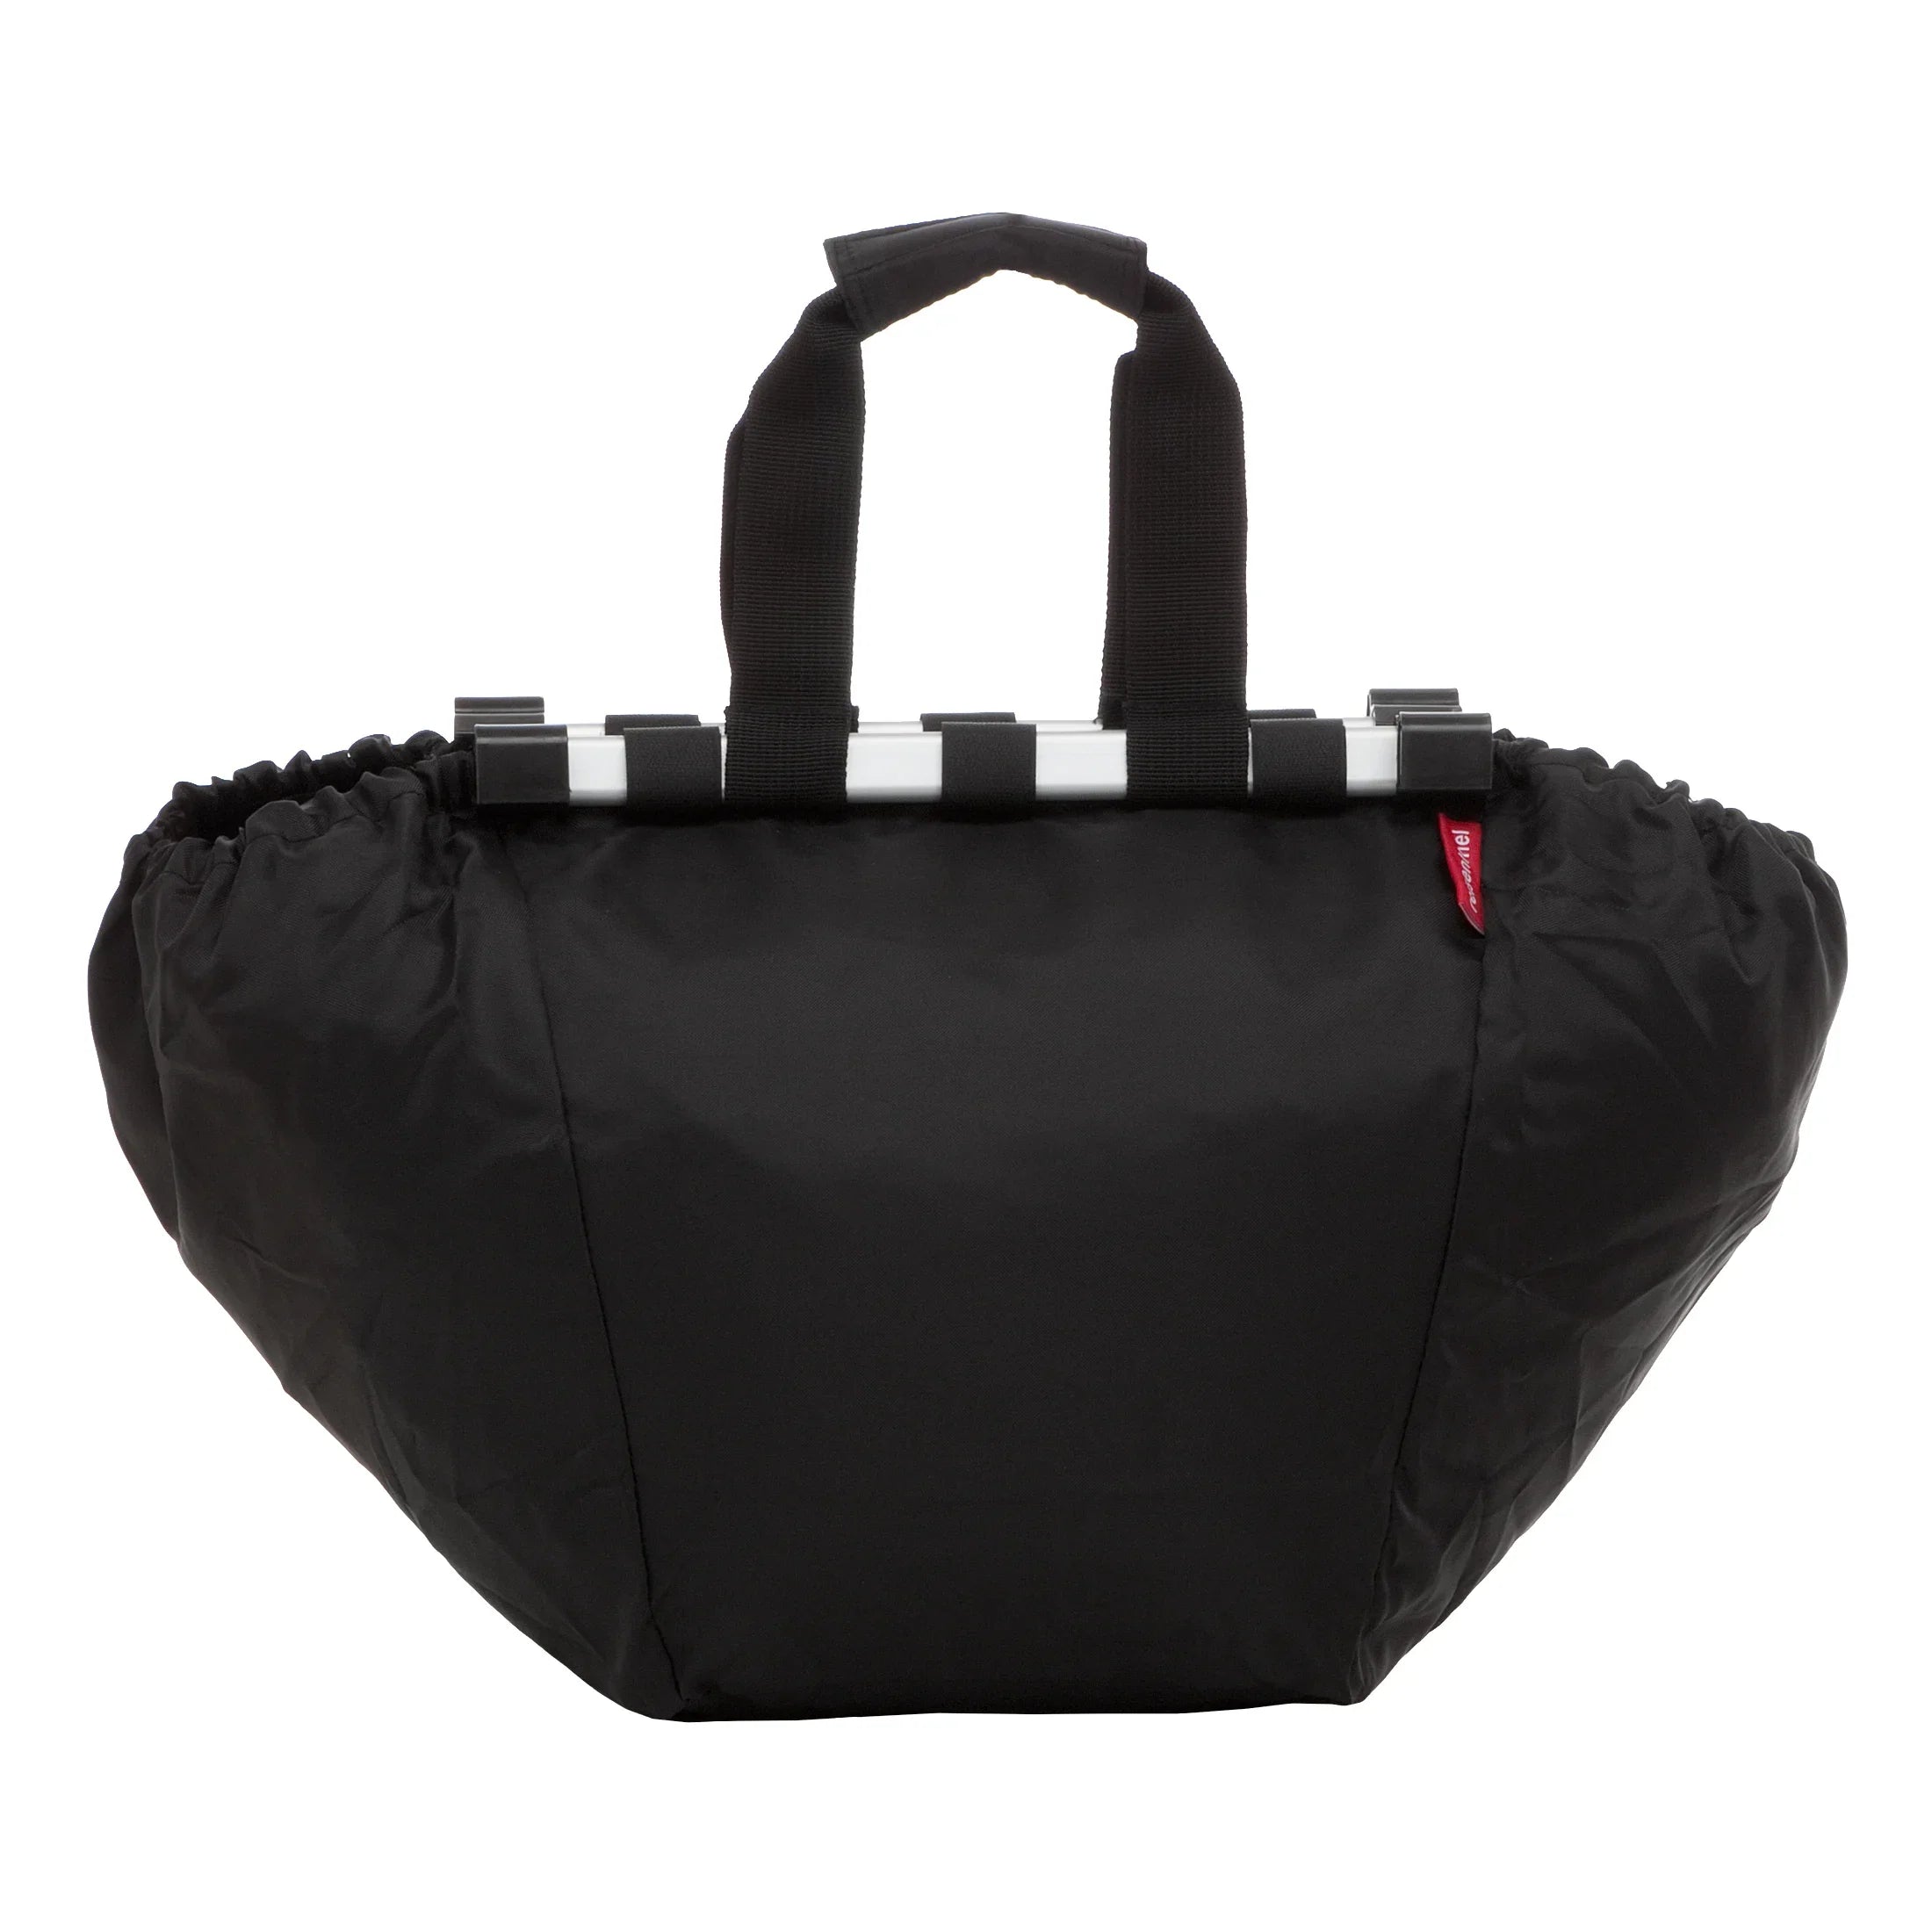 Reisenthel Shopping Easyshoppingbag shopping bag 51 cm - black